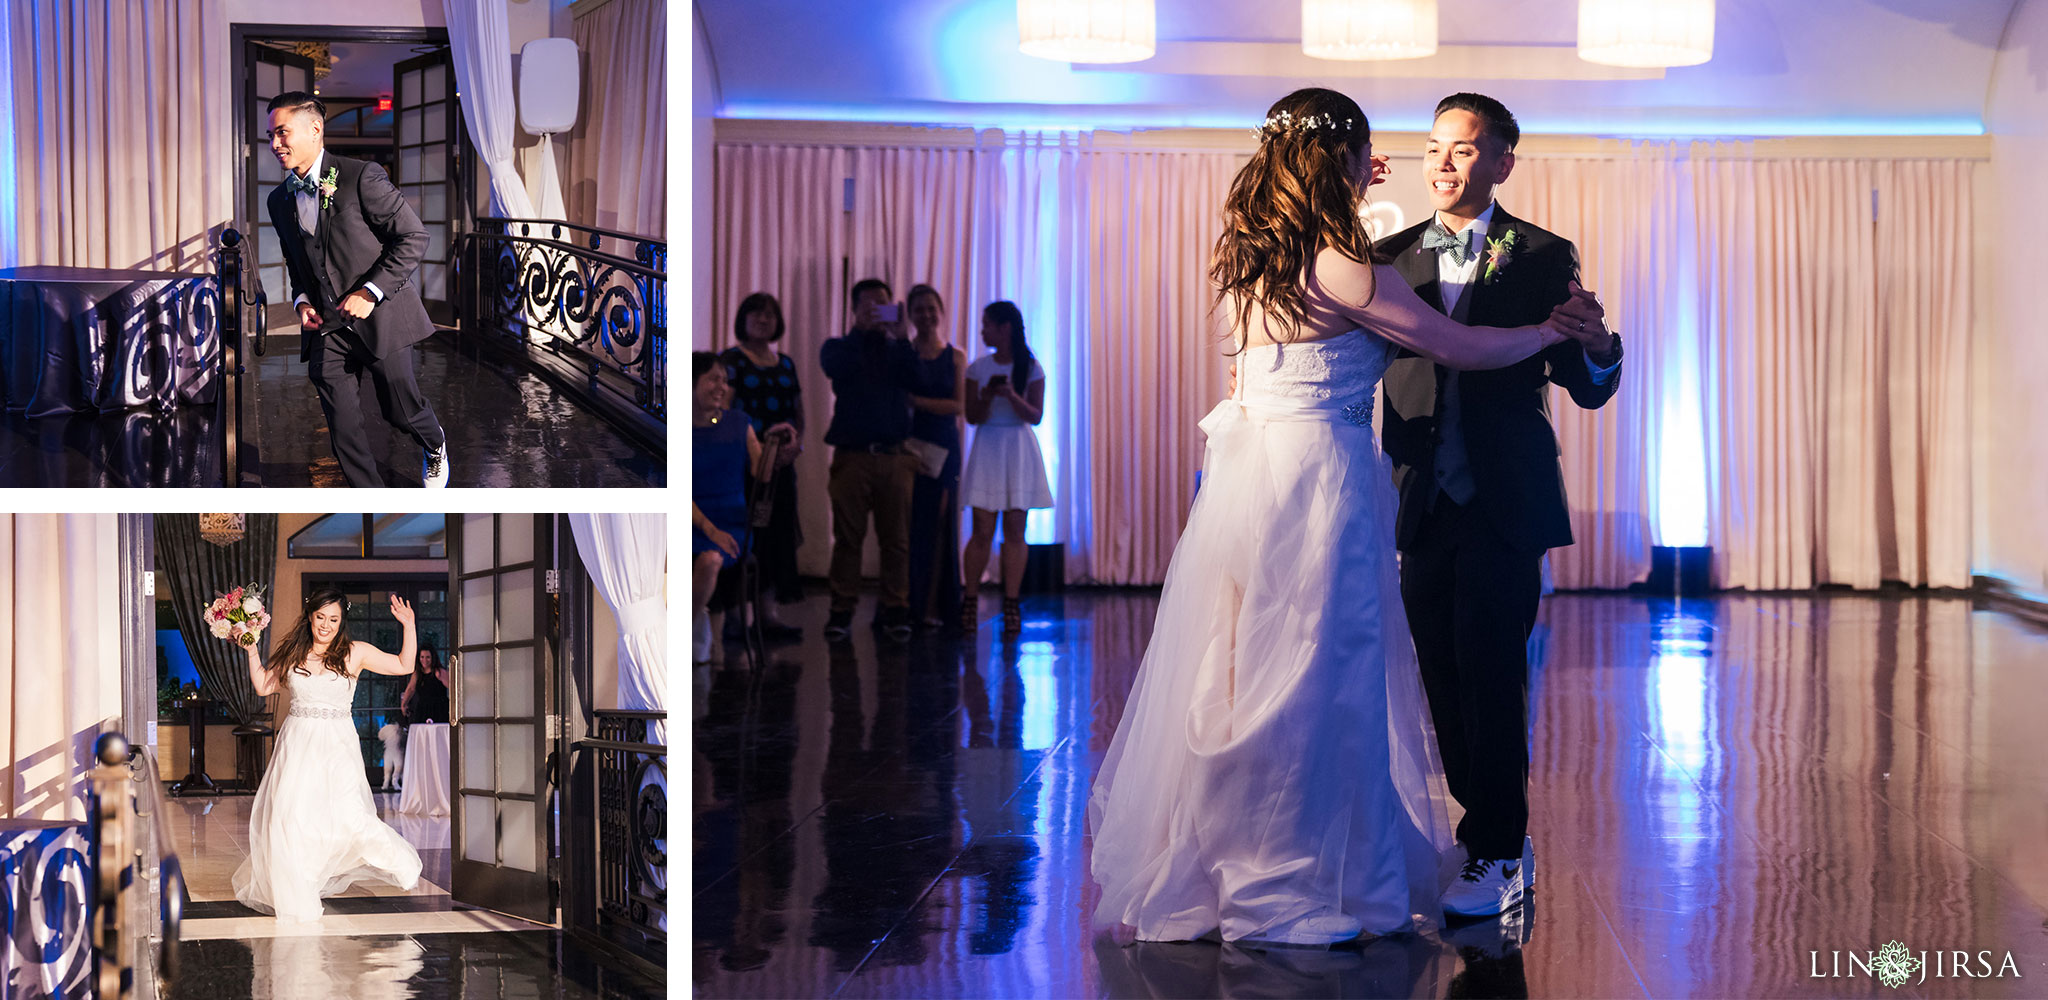 16 noor pasadena wedding reception photography